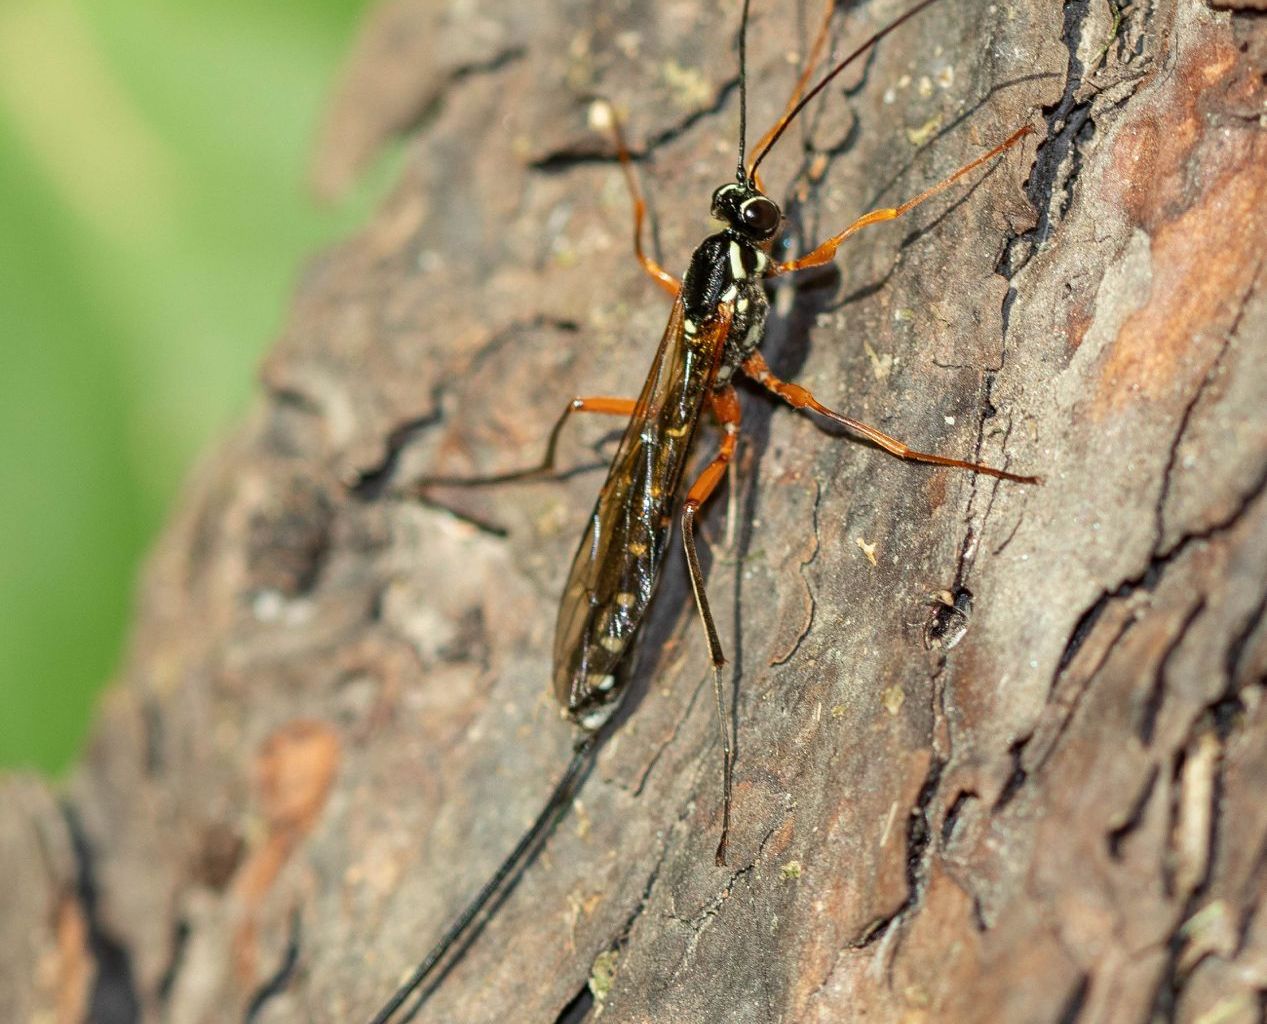 Rhyssa persuasoria (Sabre wasp)